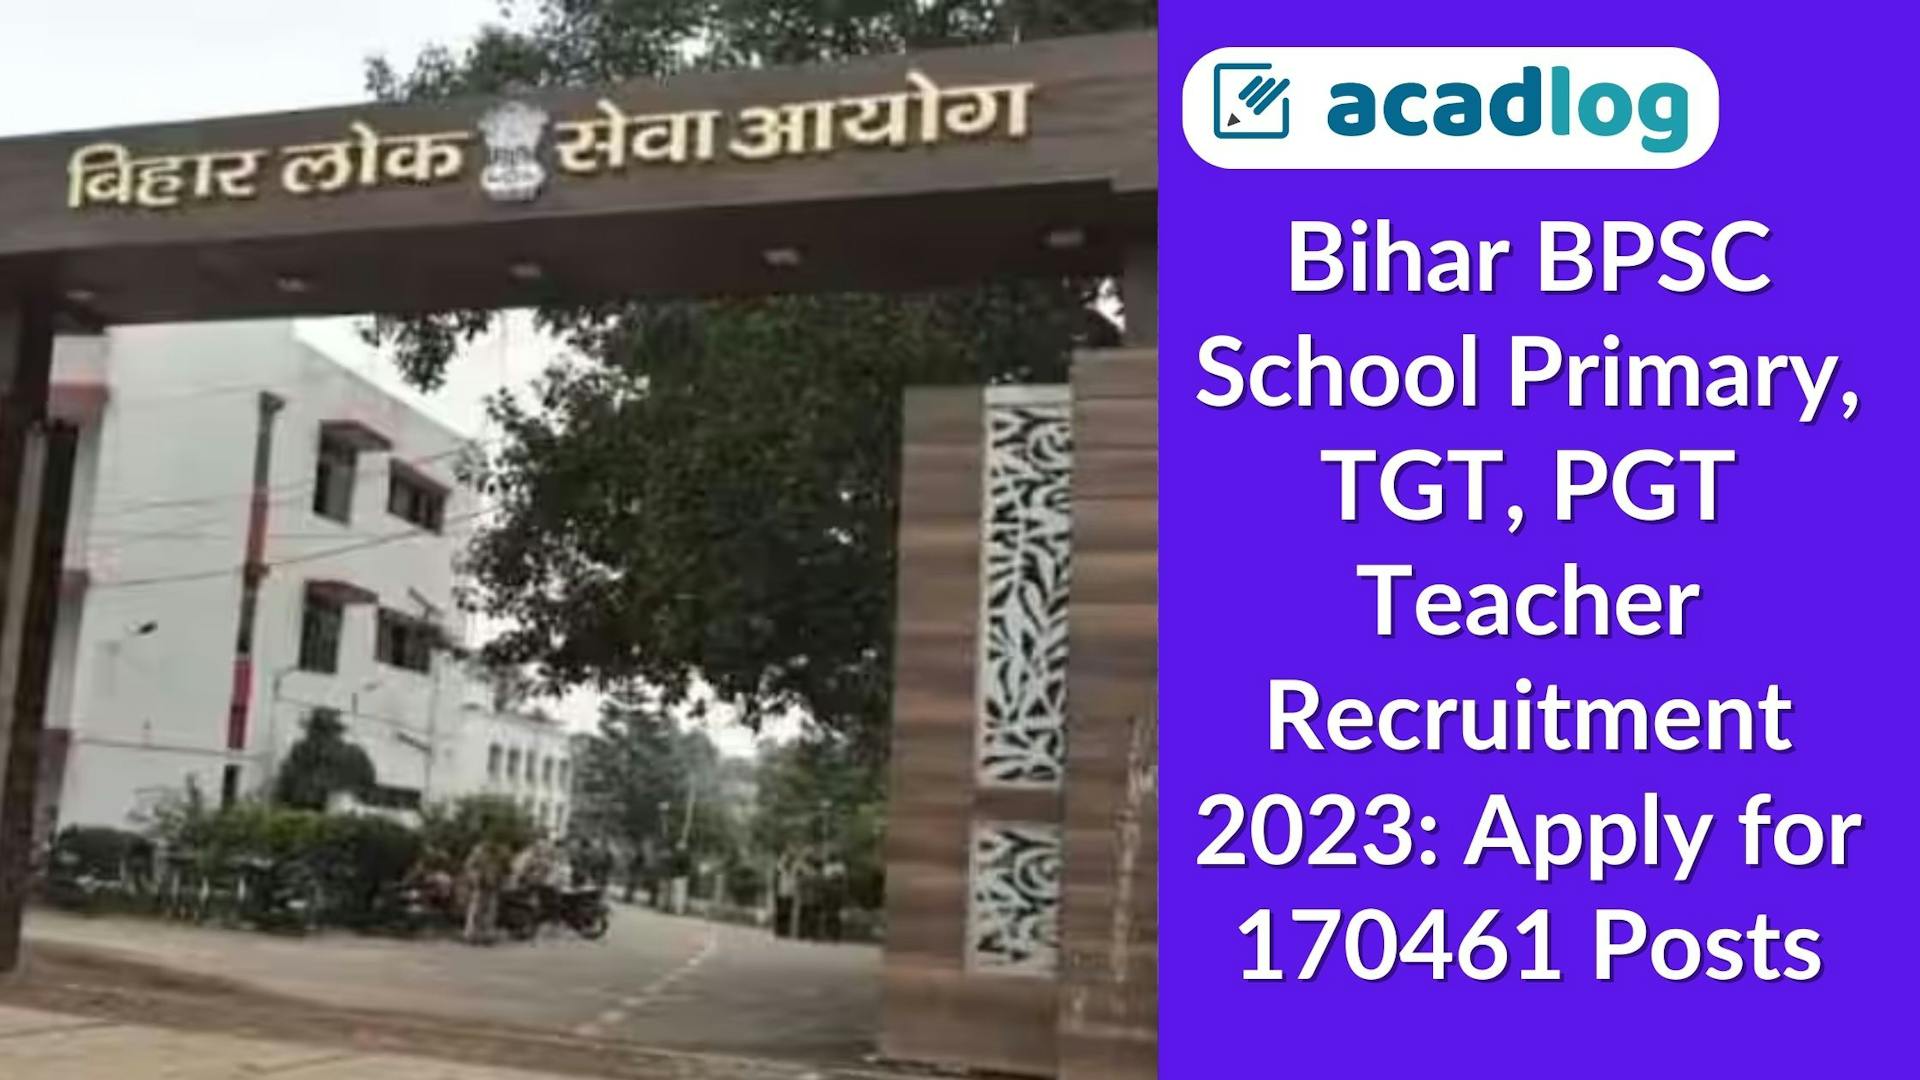 Teacher Vacancy in Bihar: BPSC TGT and TGT Recruitment 2023